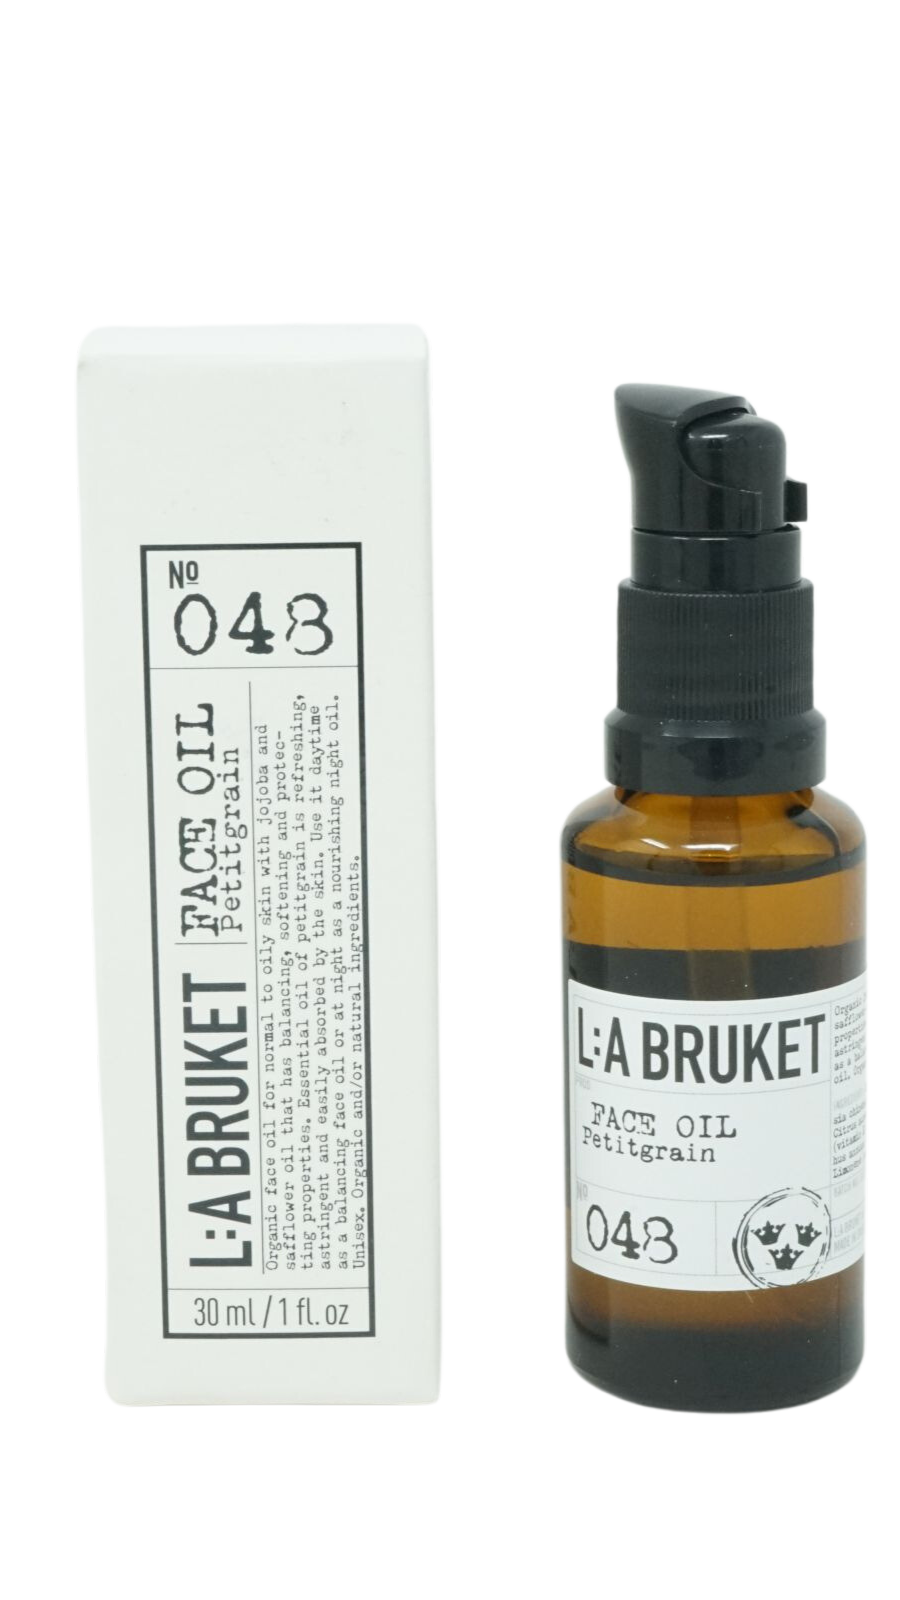 La Bruket No 048 Face Oil Petitgrain 30ml